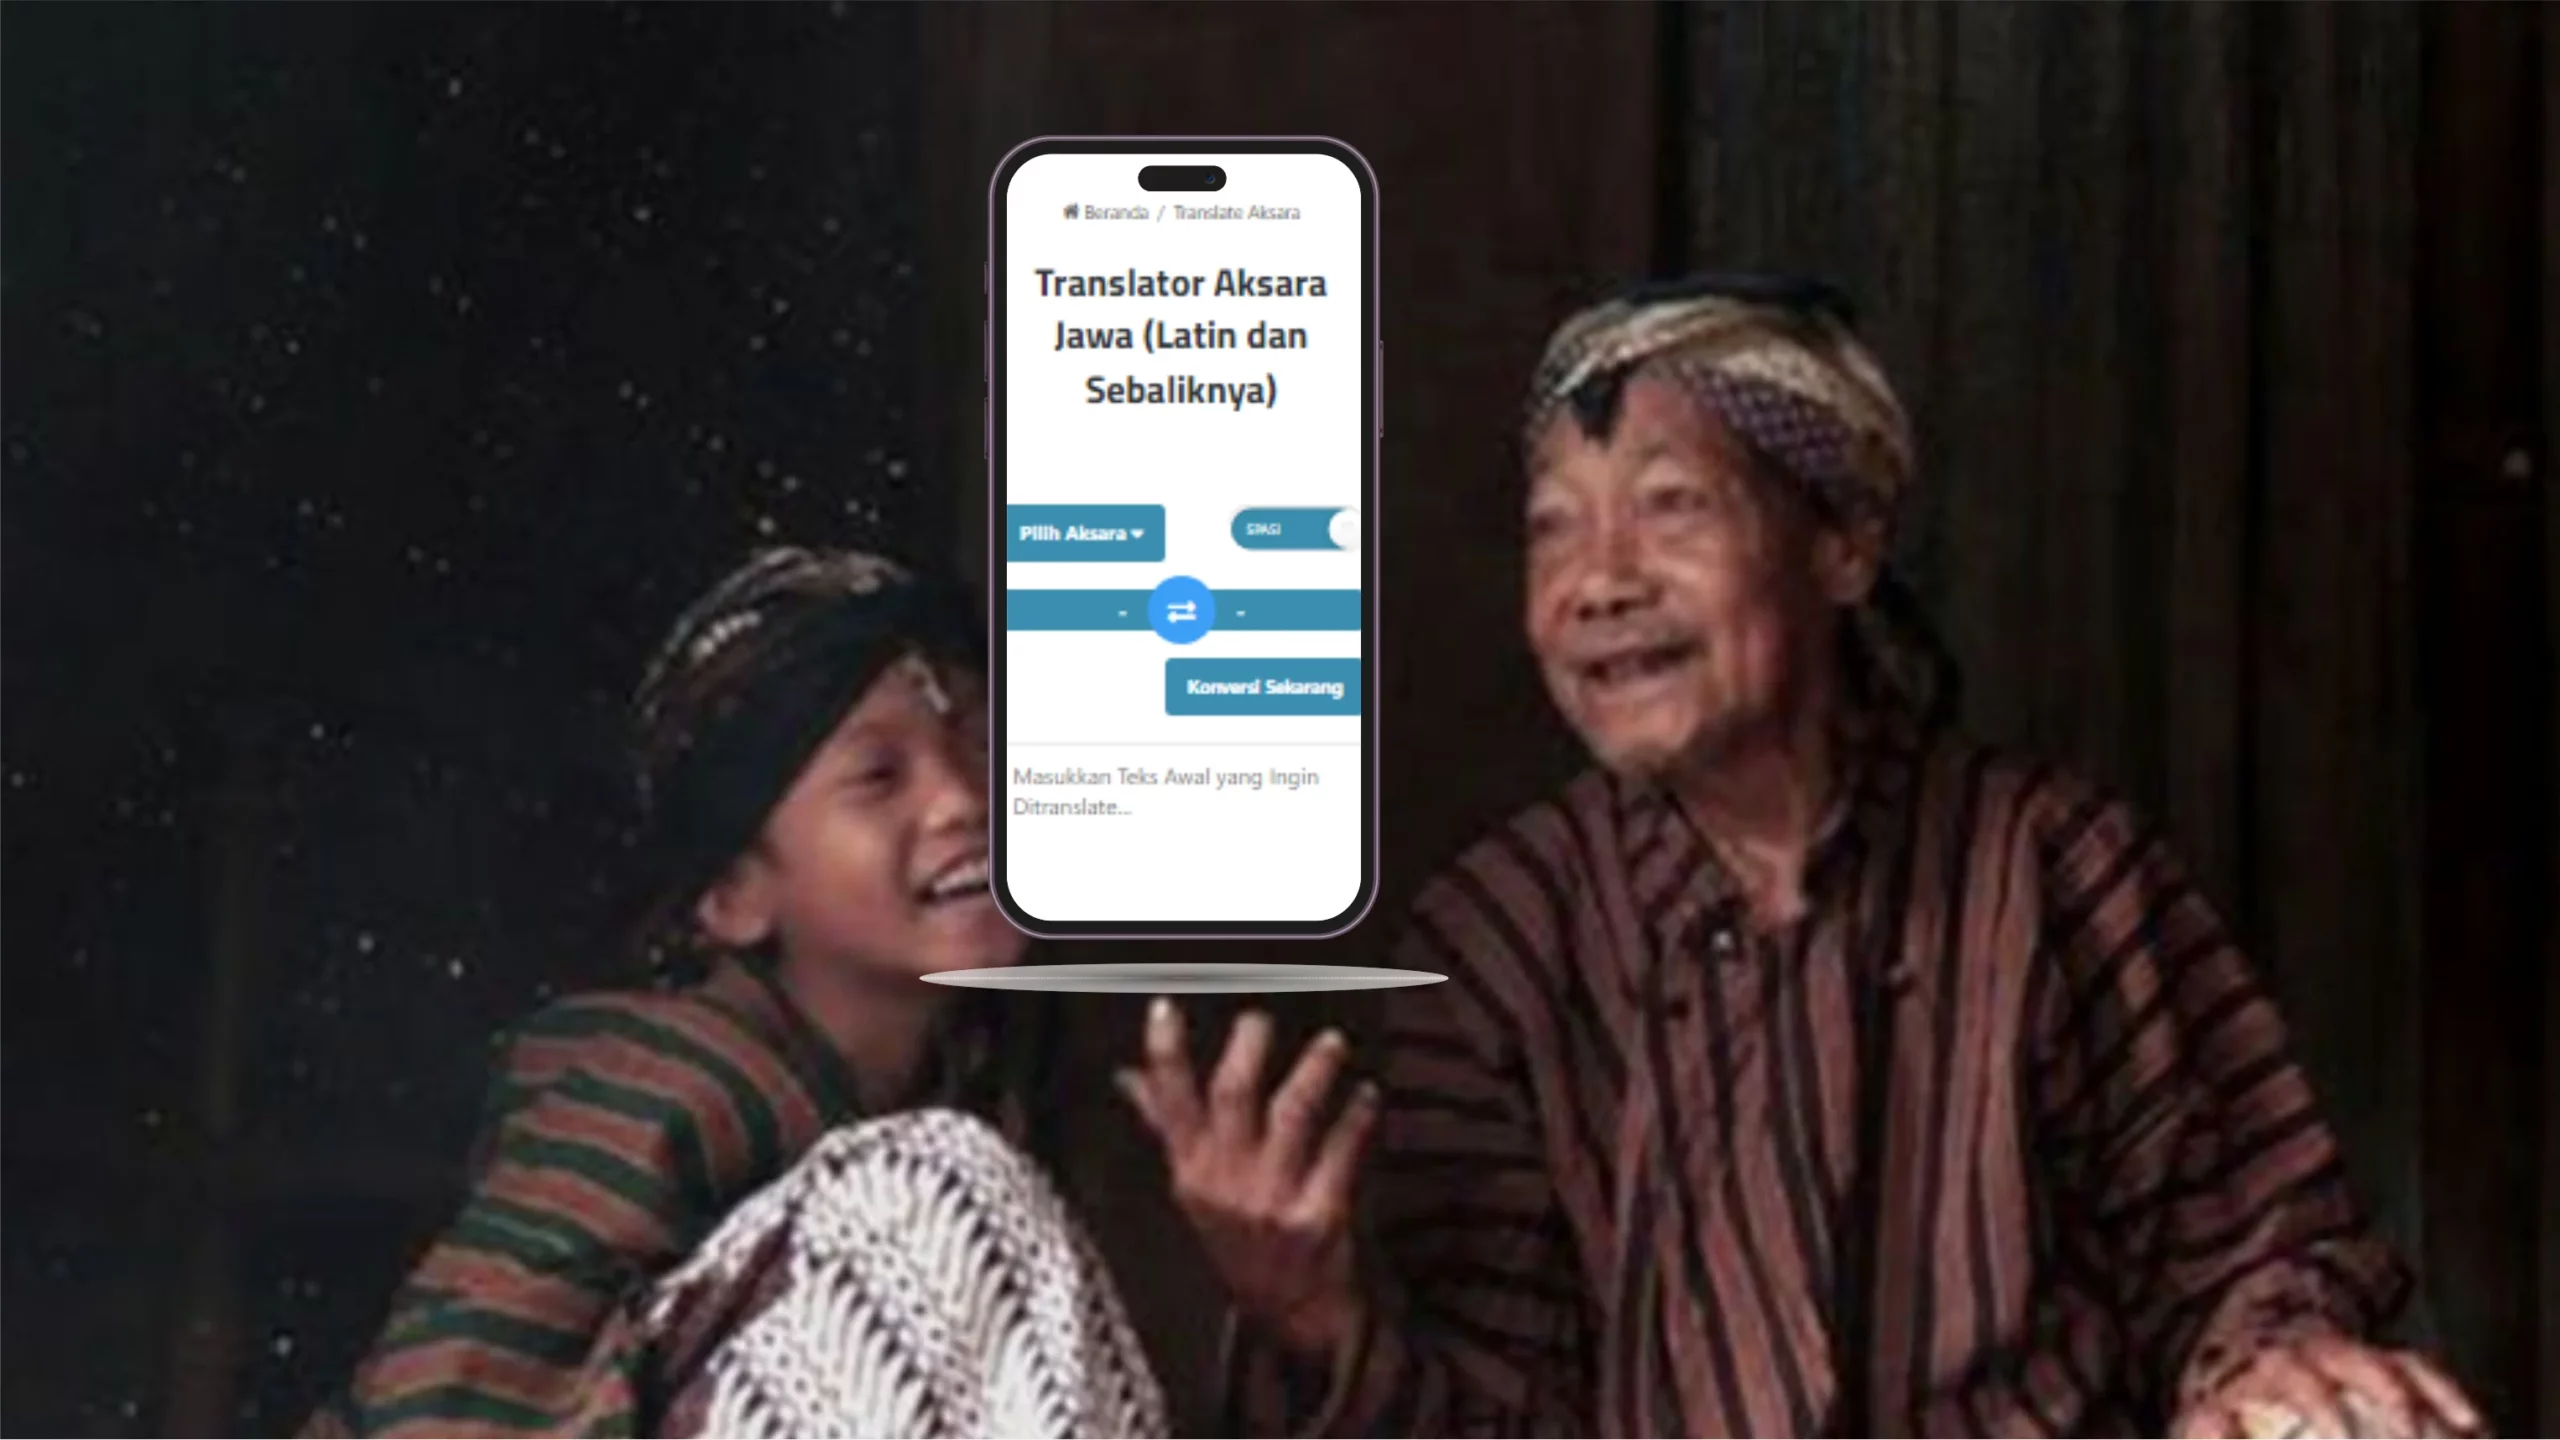 Translator Aksara Jawa